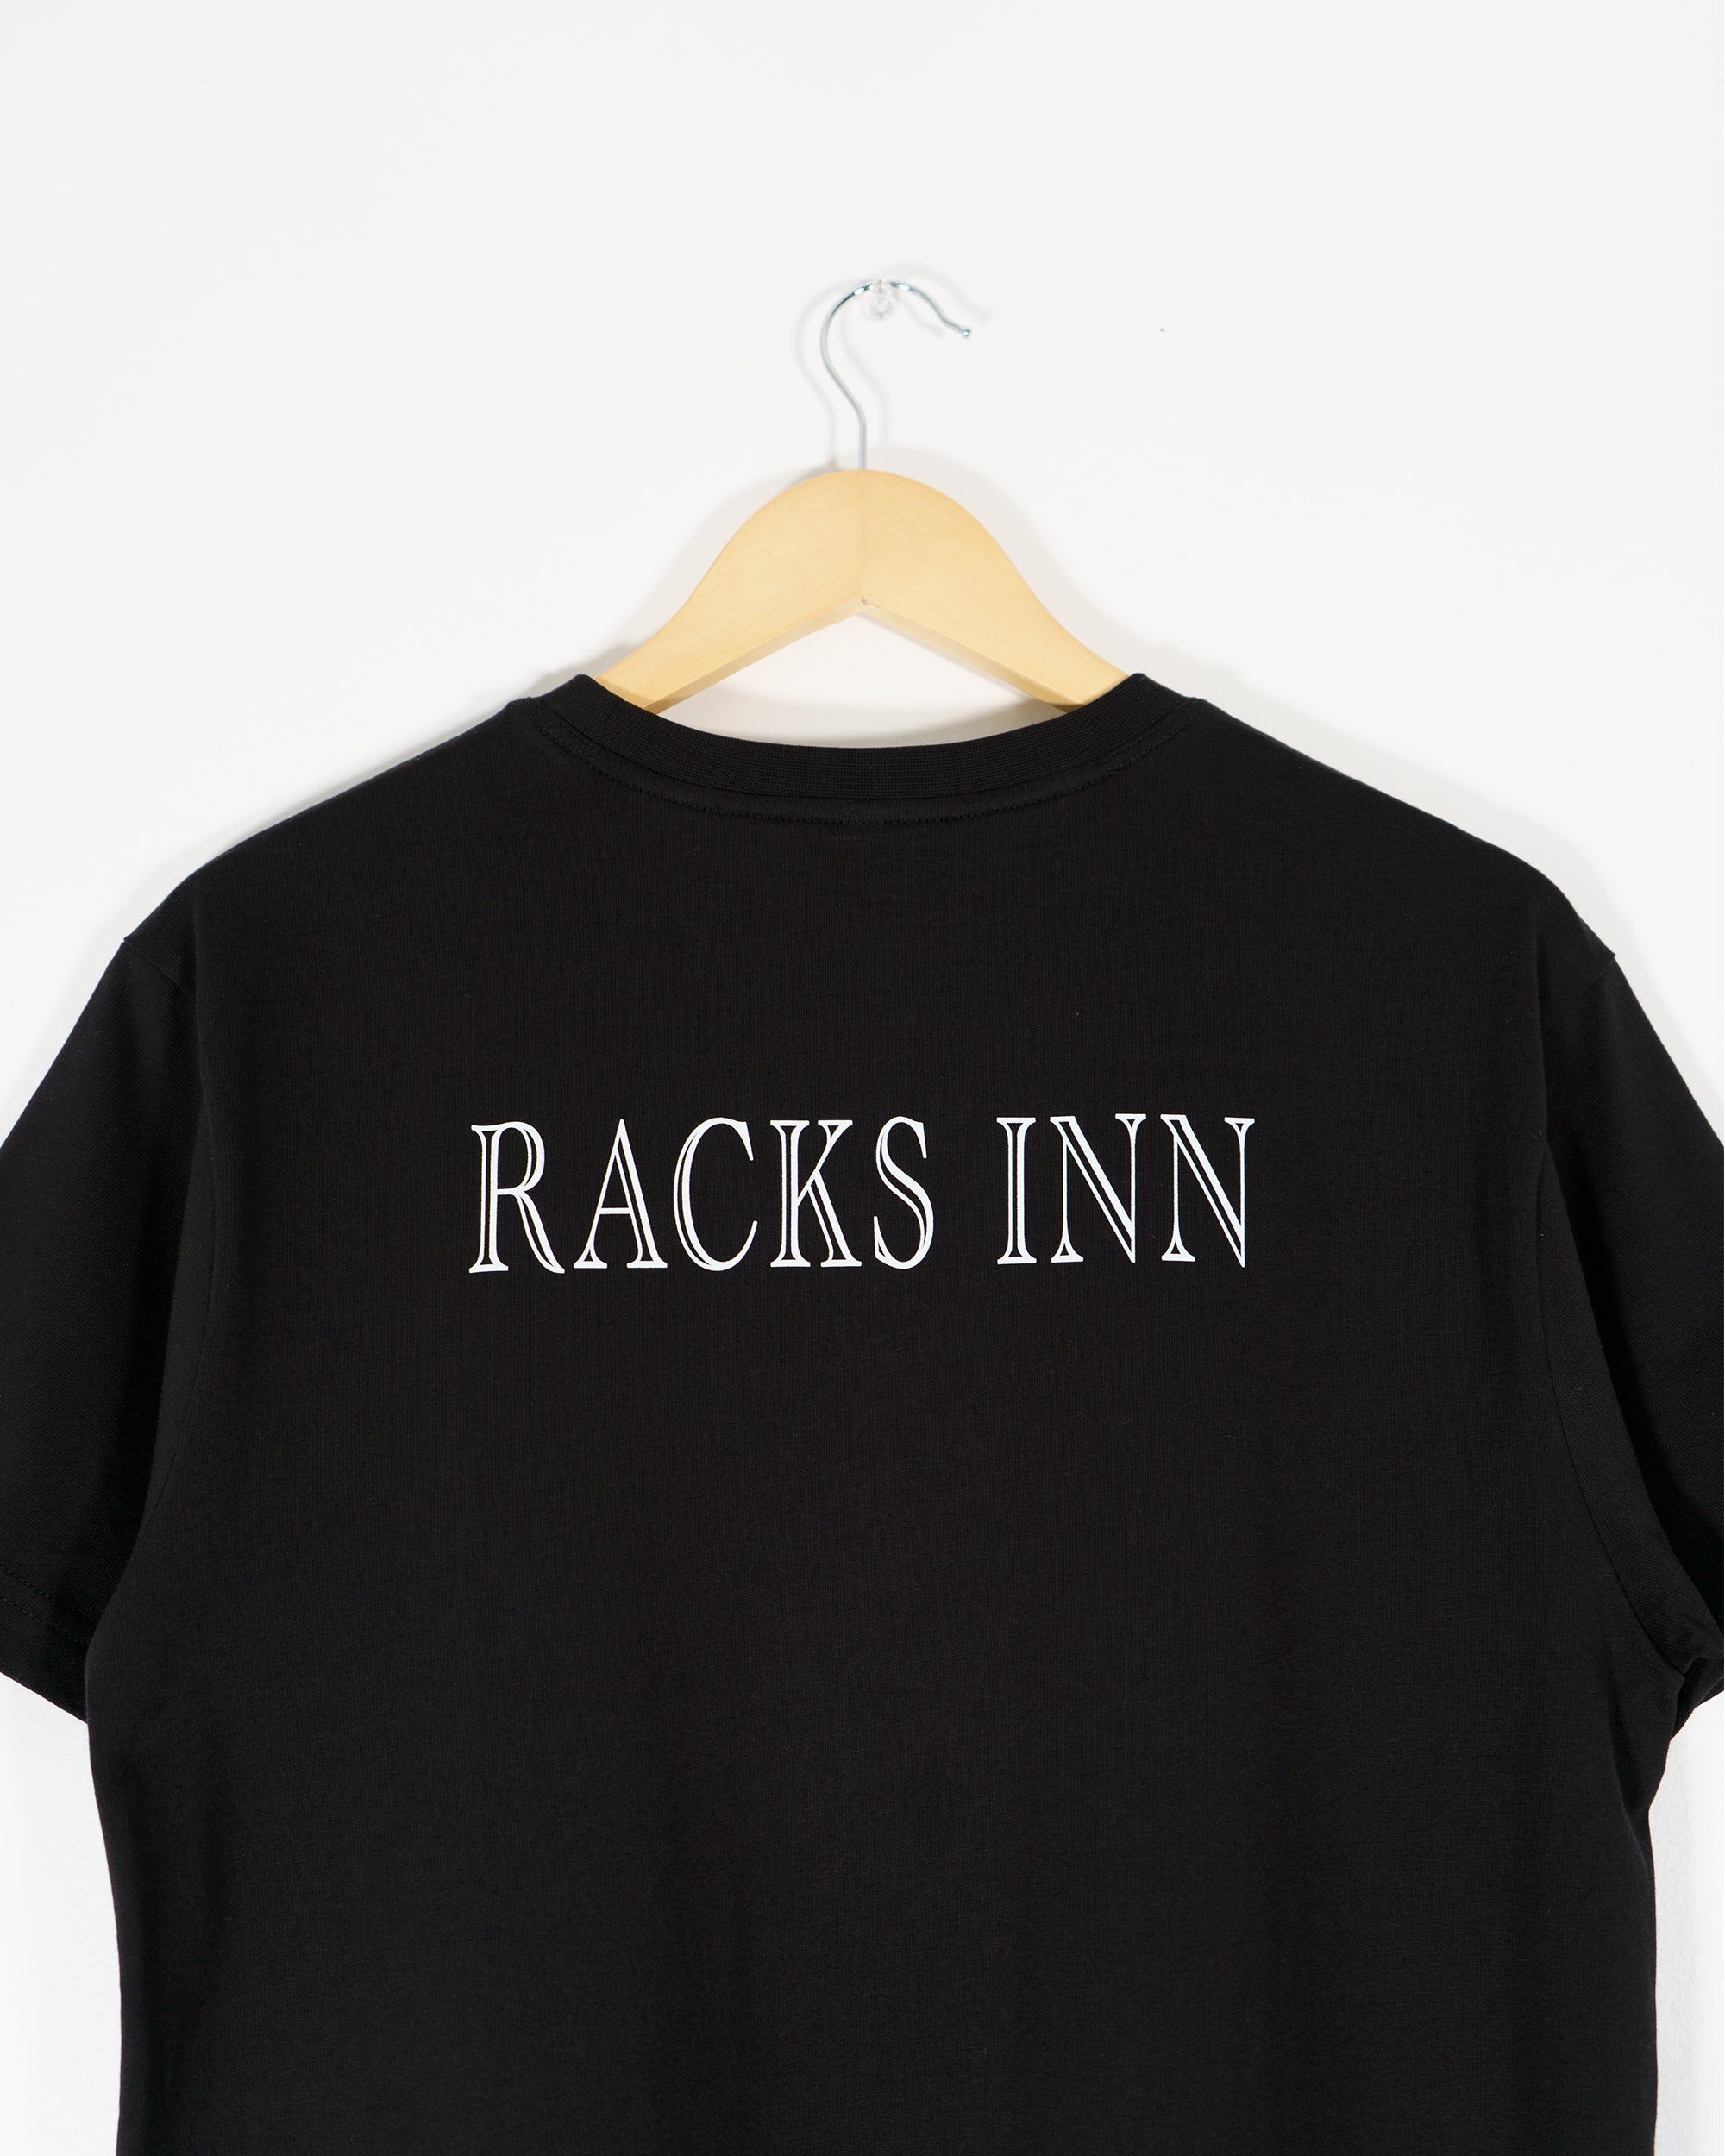 For The Love of Racks T-Shirt - Black